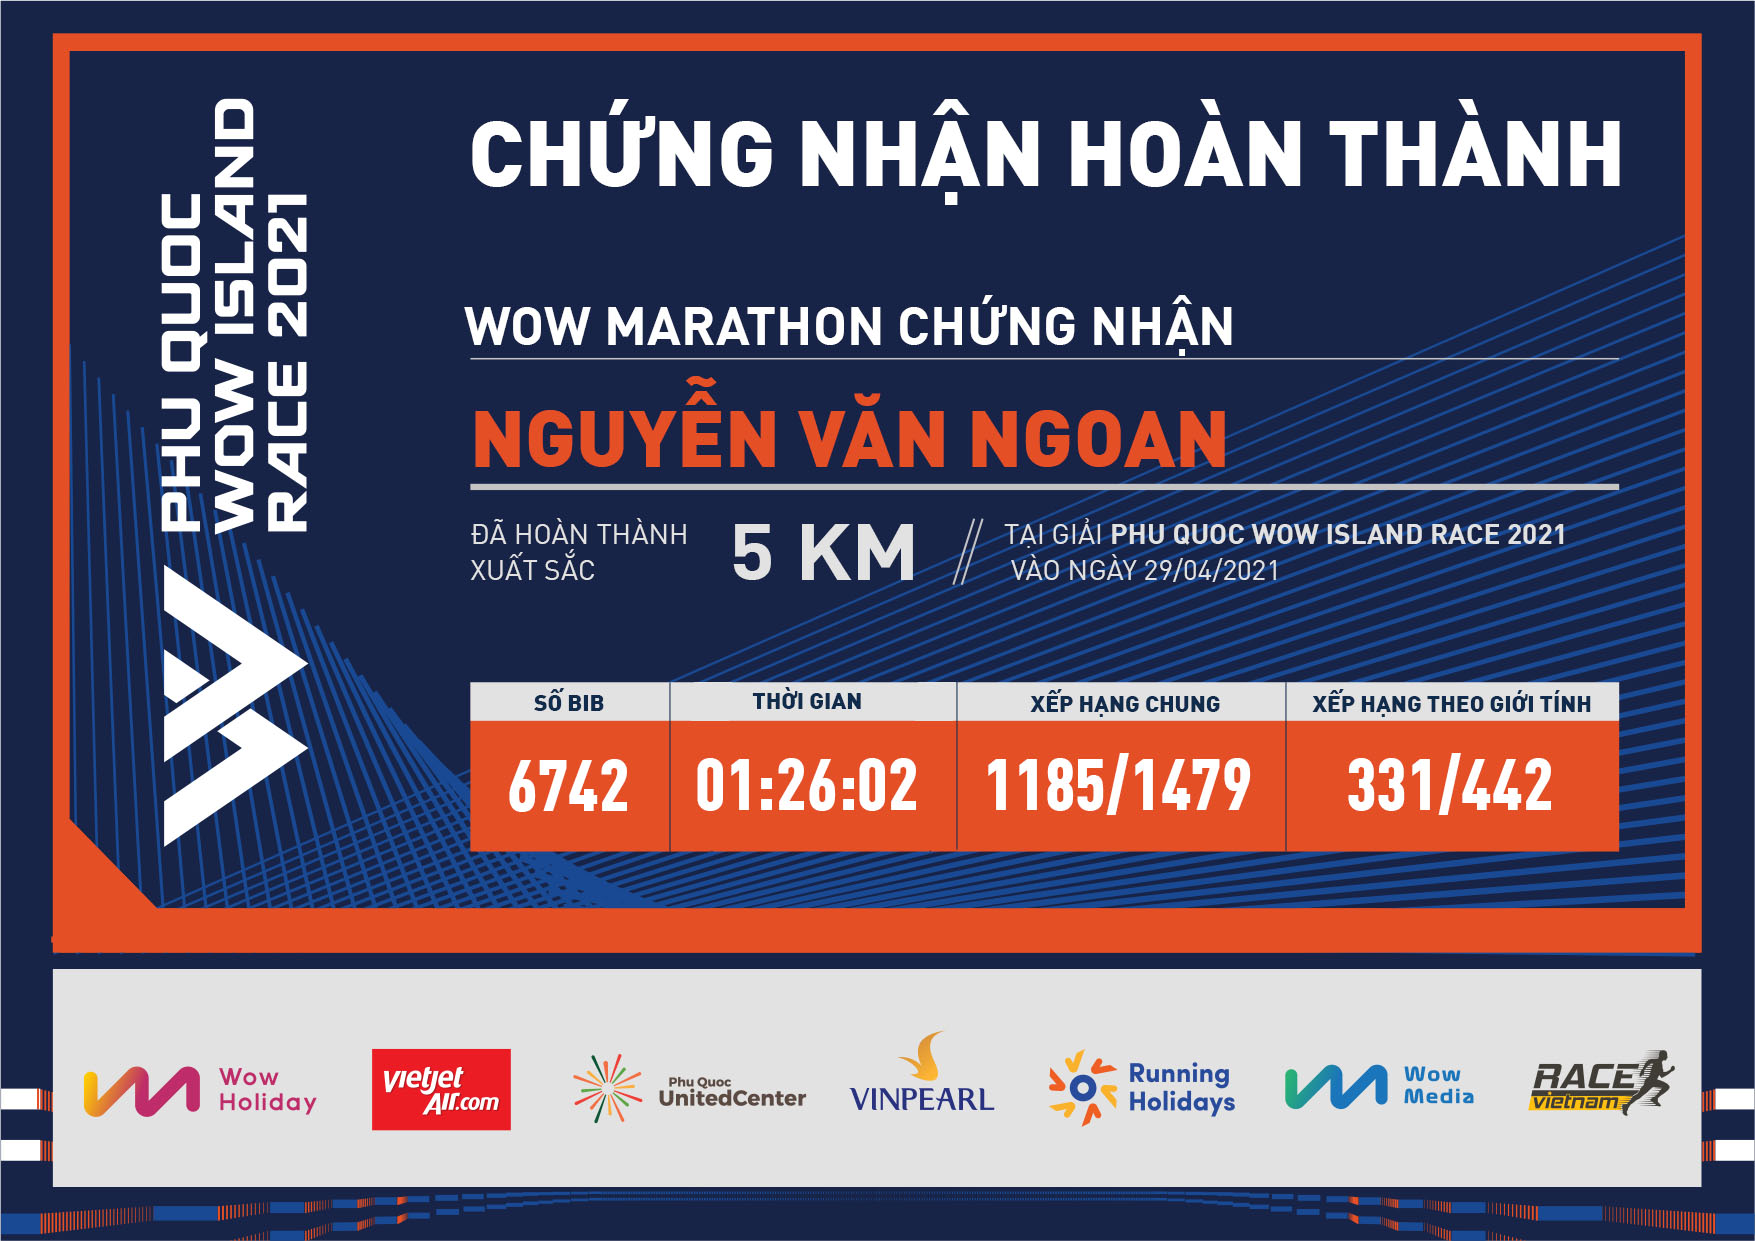 6742 - Nguyễn Văn Ngoan